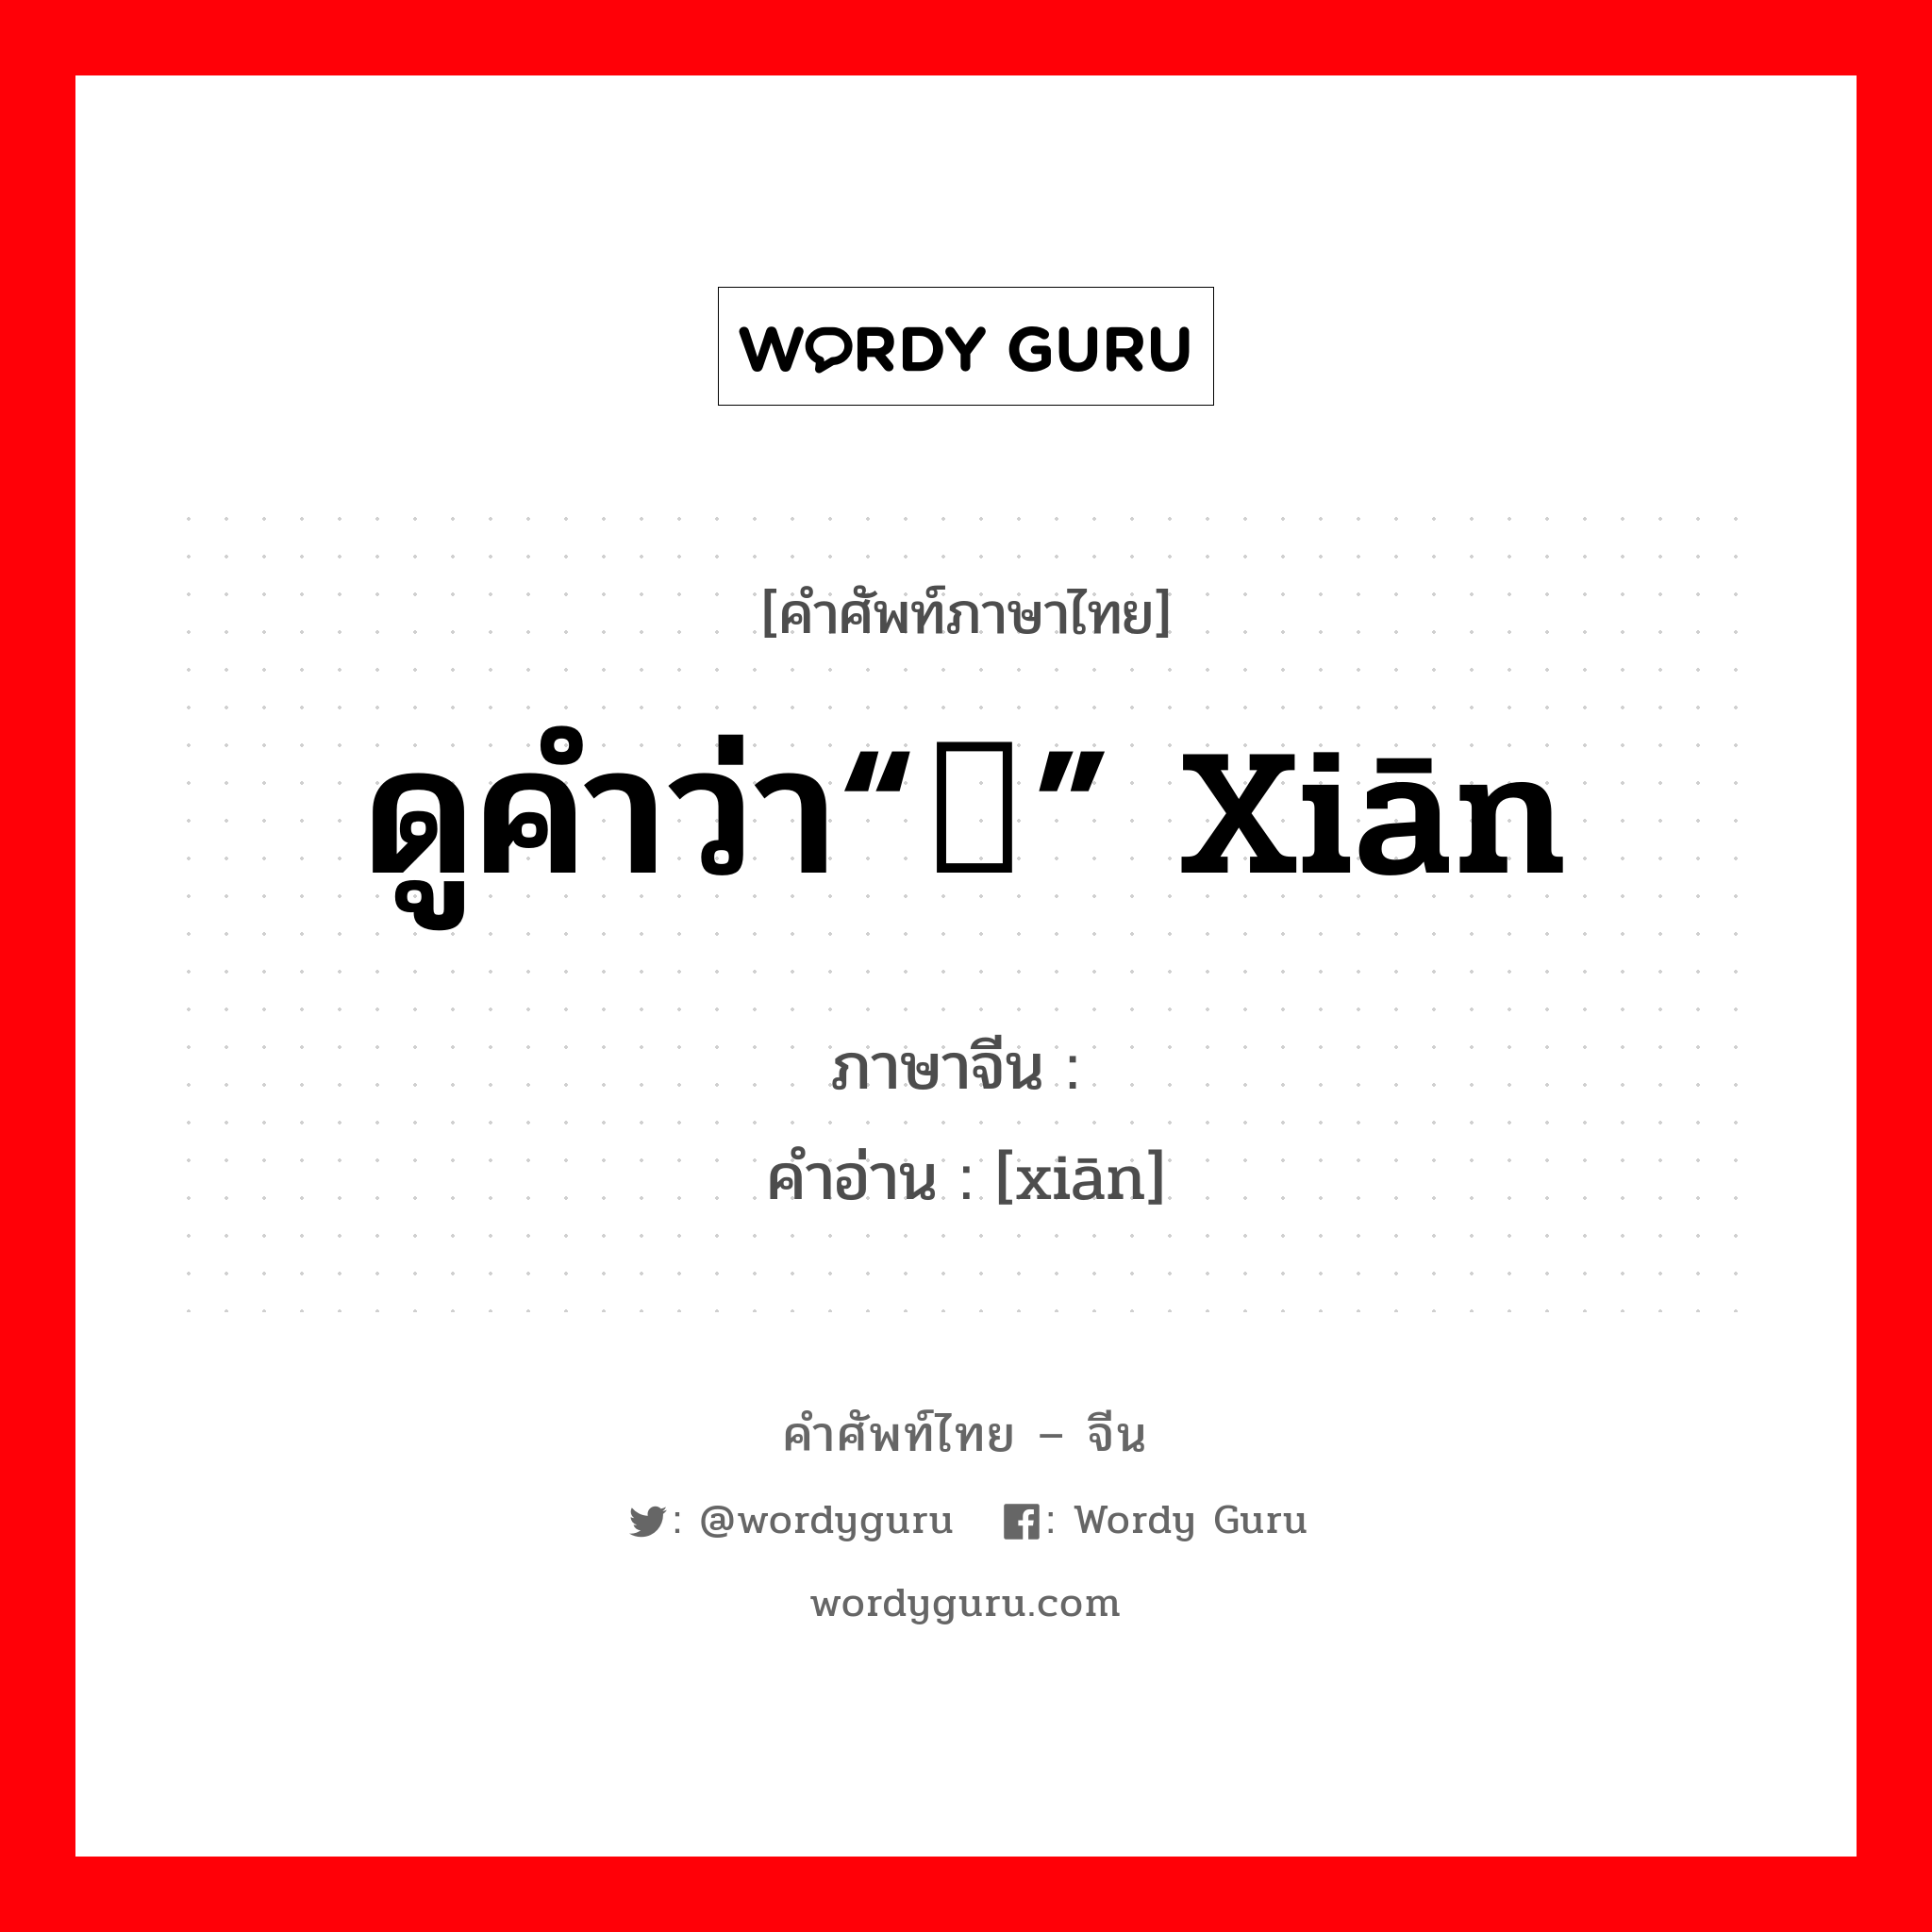 ดูคำว่า“铦” xiān ภาษาจีนคืออะไร, คำศัพท์ภาษาไทย - จีน ดูคำว่า“铦” xiān ภาษาจีน 锬 คำอ่าน [xiān]